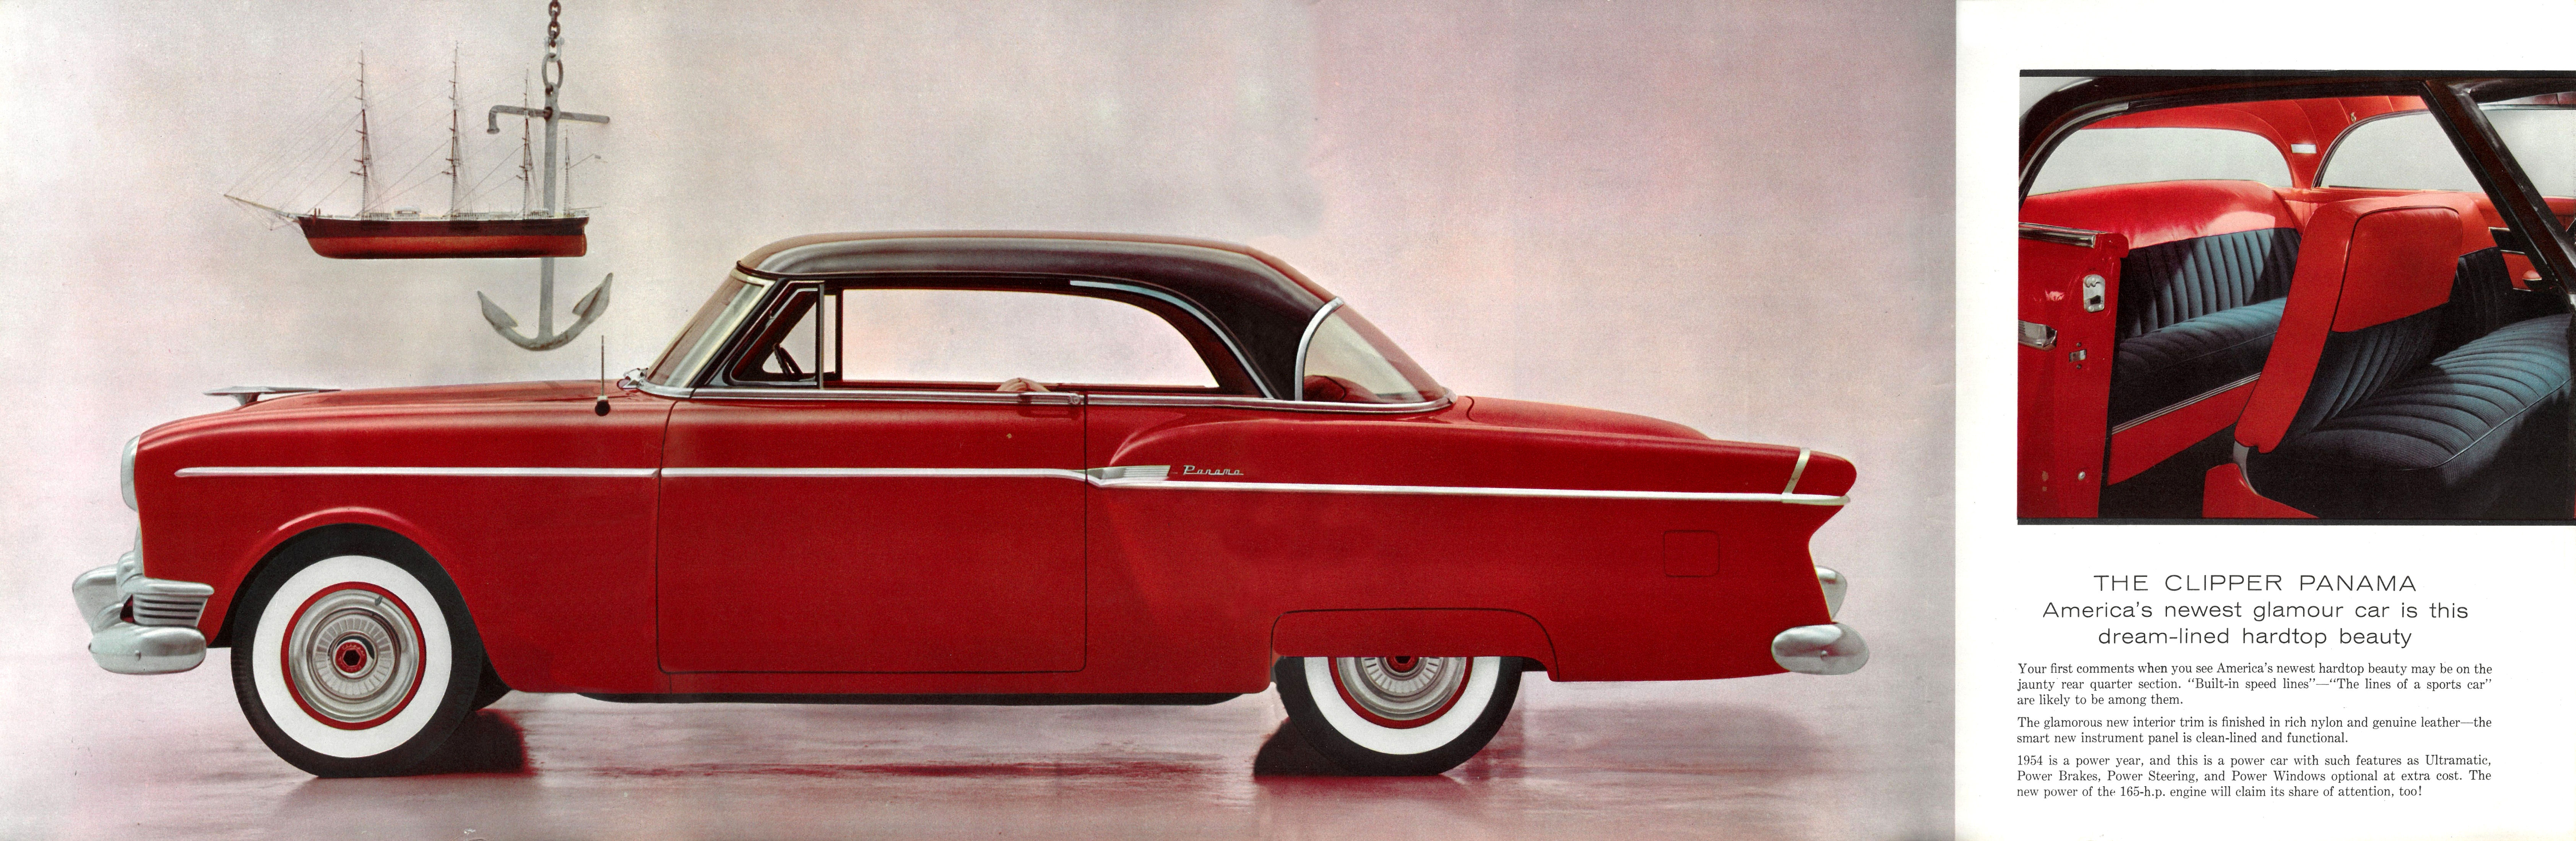 1954 Packard Clipper-04-05